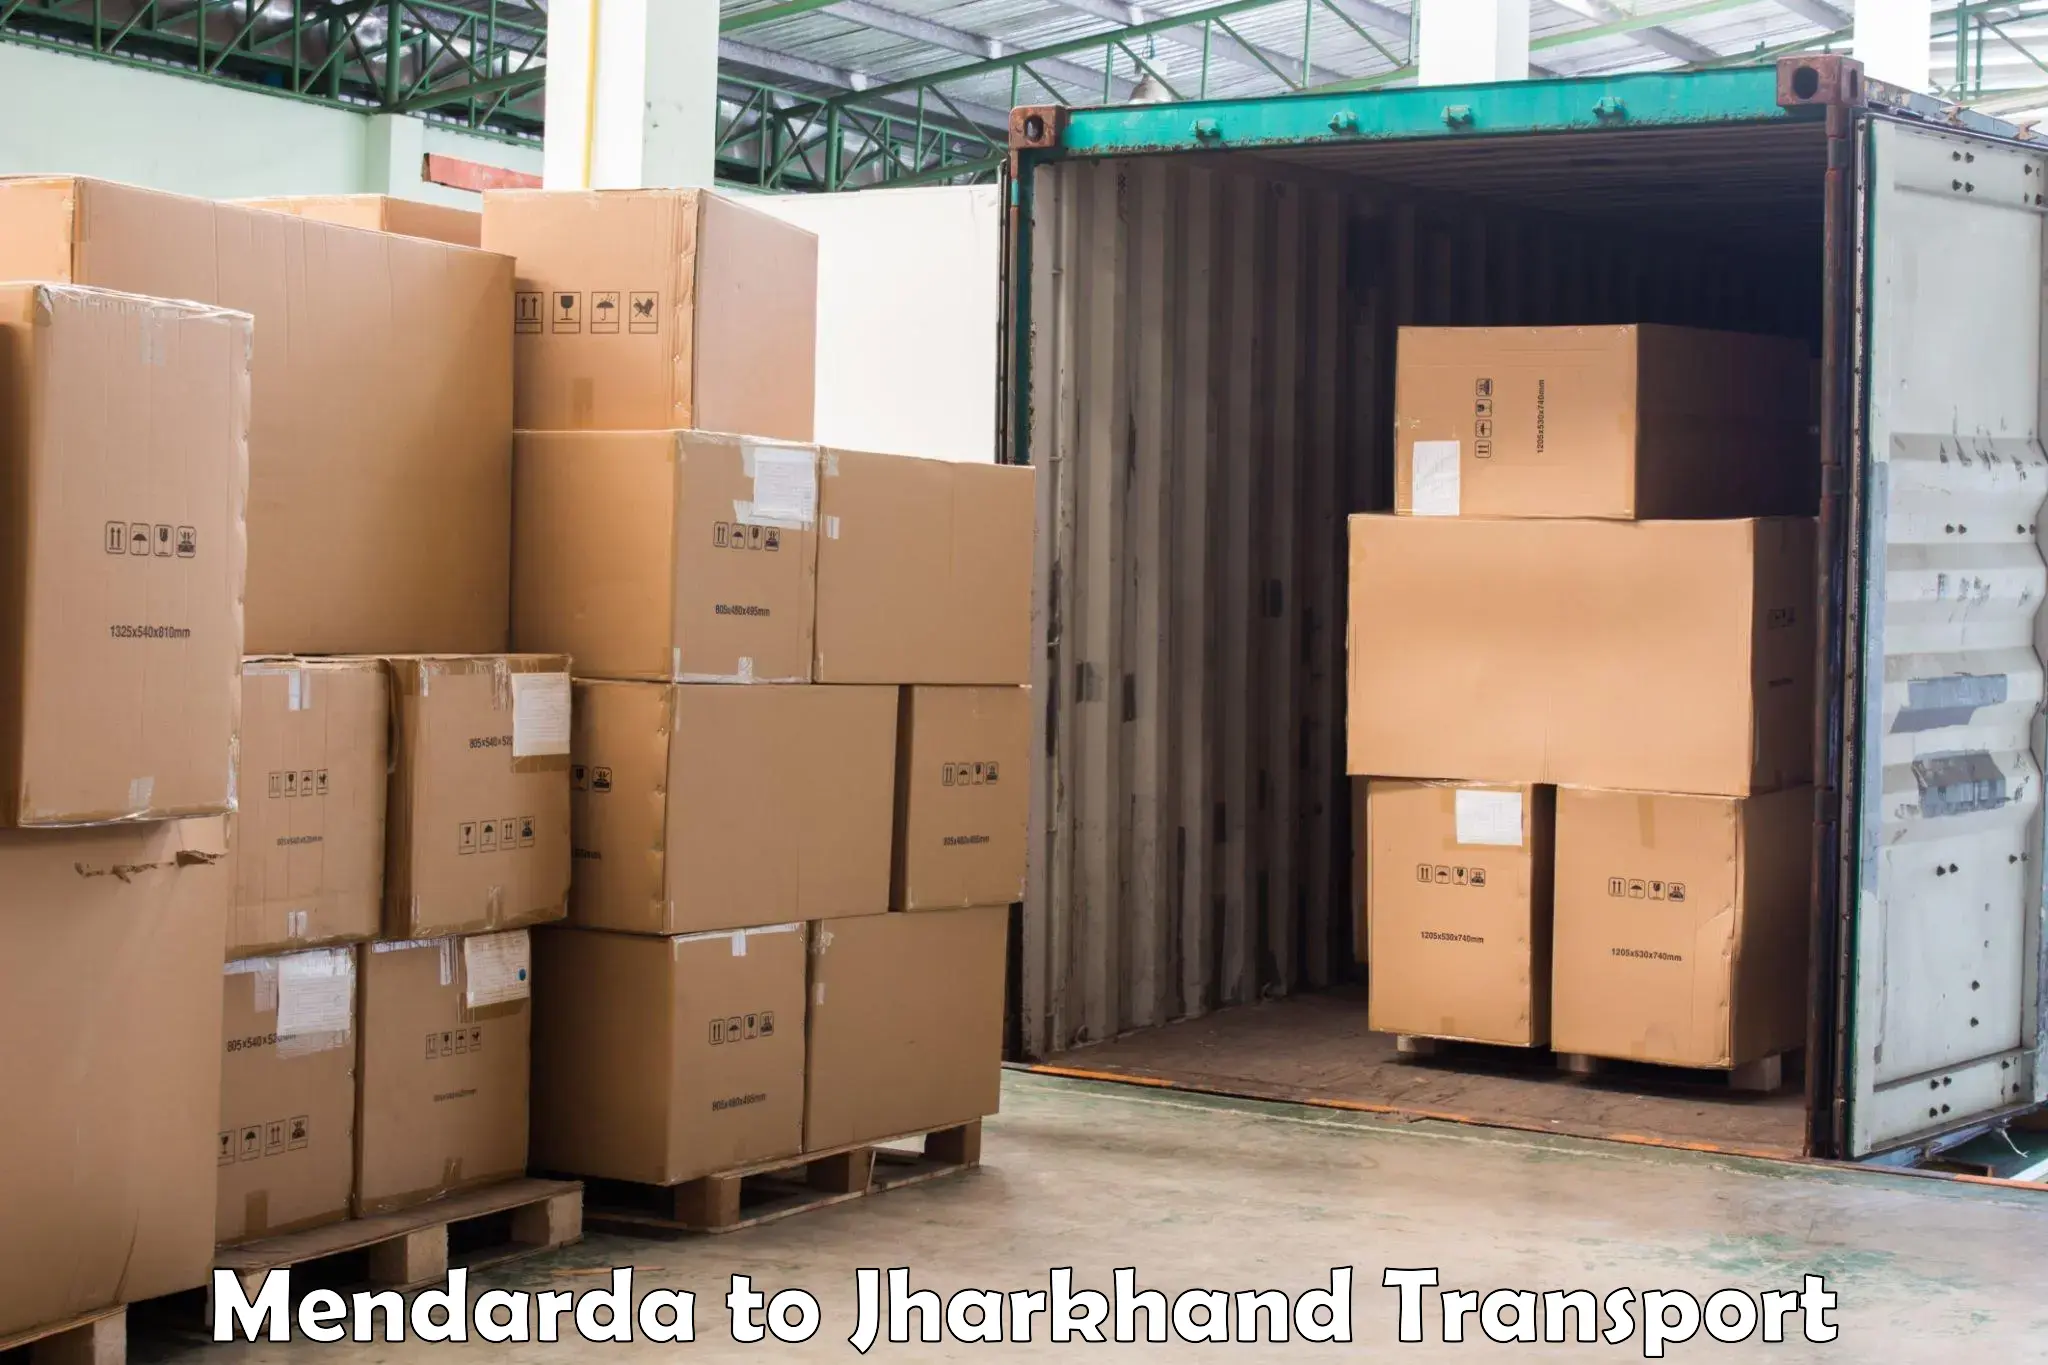 Parcel transport services Mendarda to East Singhbhum